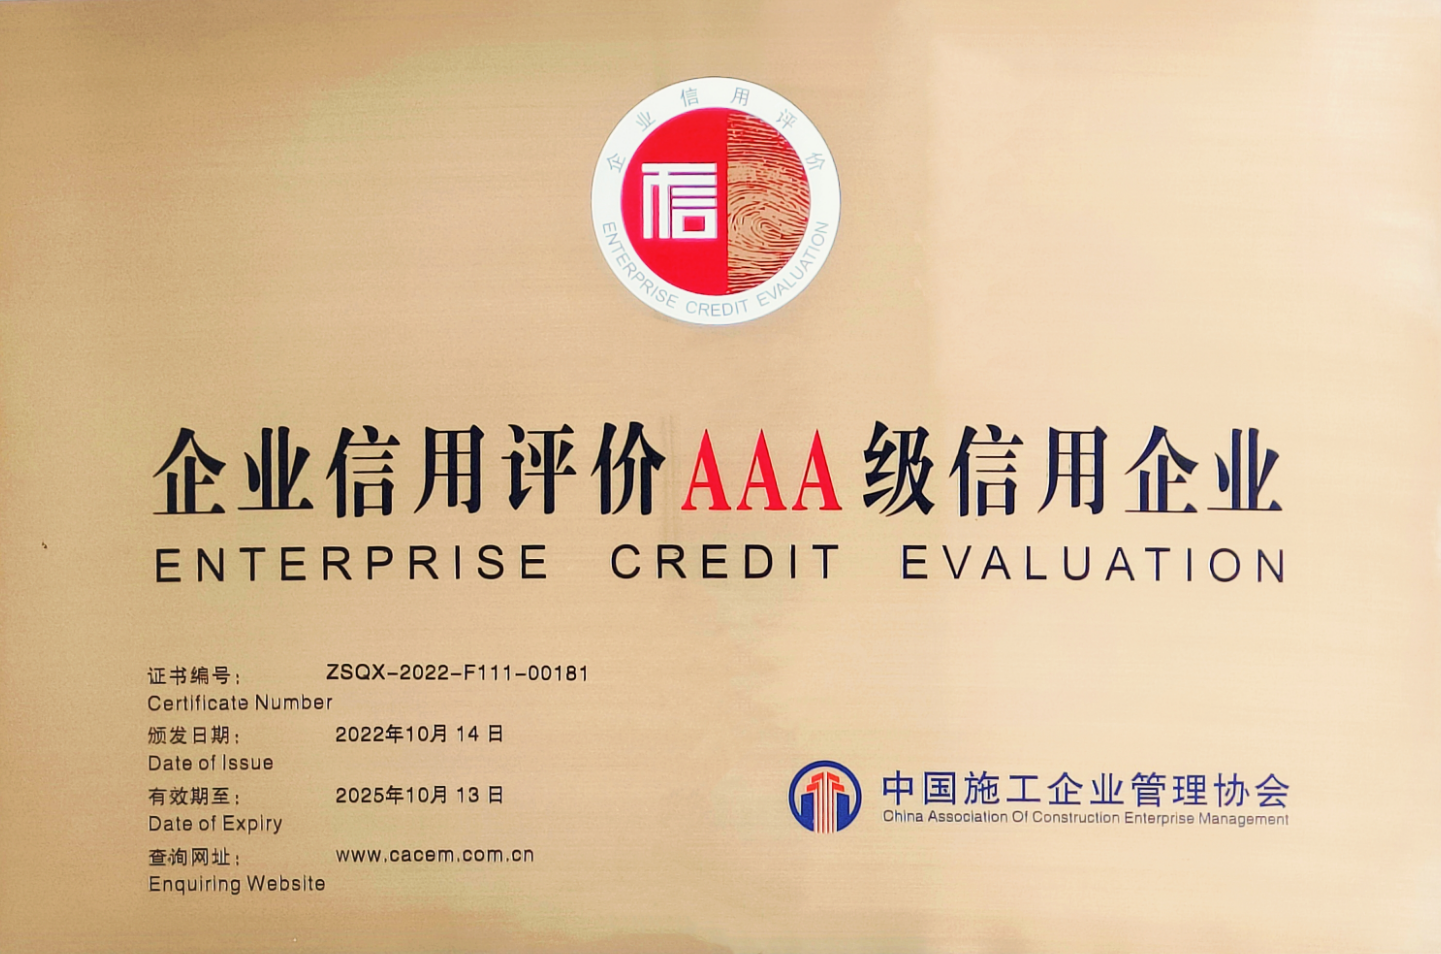 企业信用评价AAA级信用企业-中国施工企业管理协会